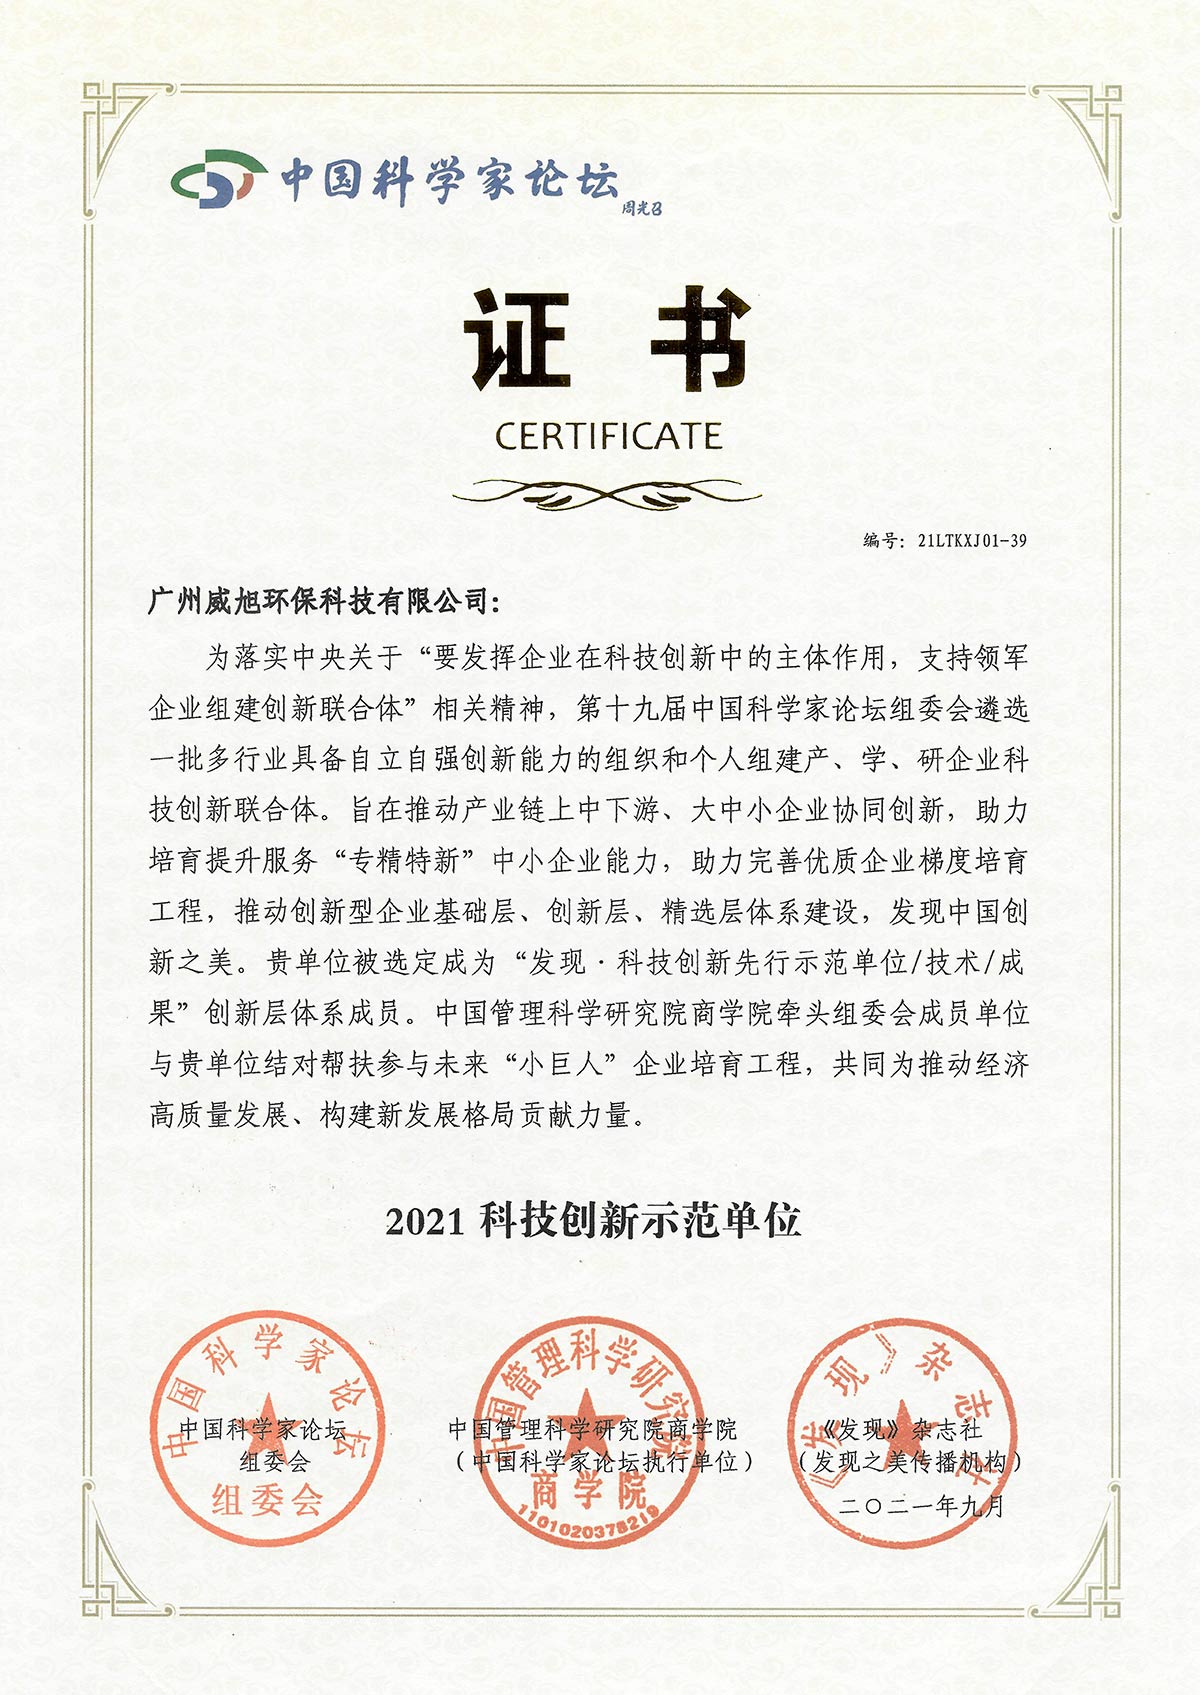 威旭环保获颁“中国科技创新先进单位”荣誉称号